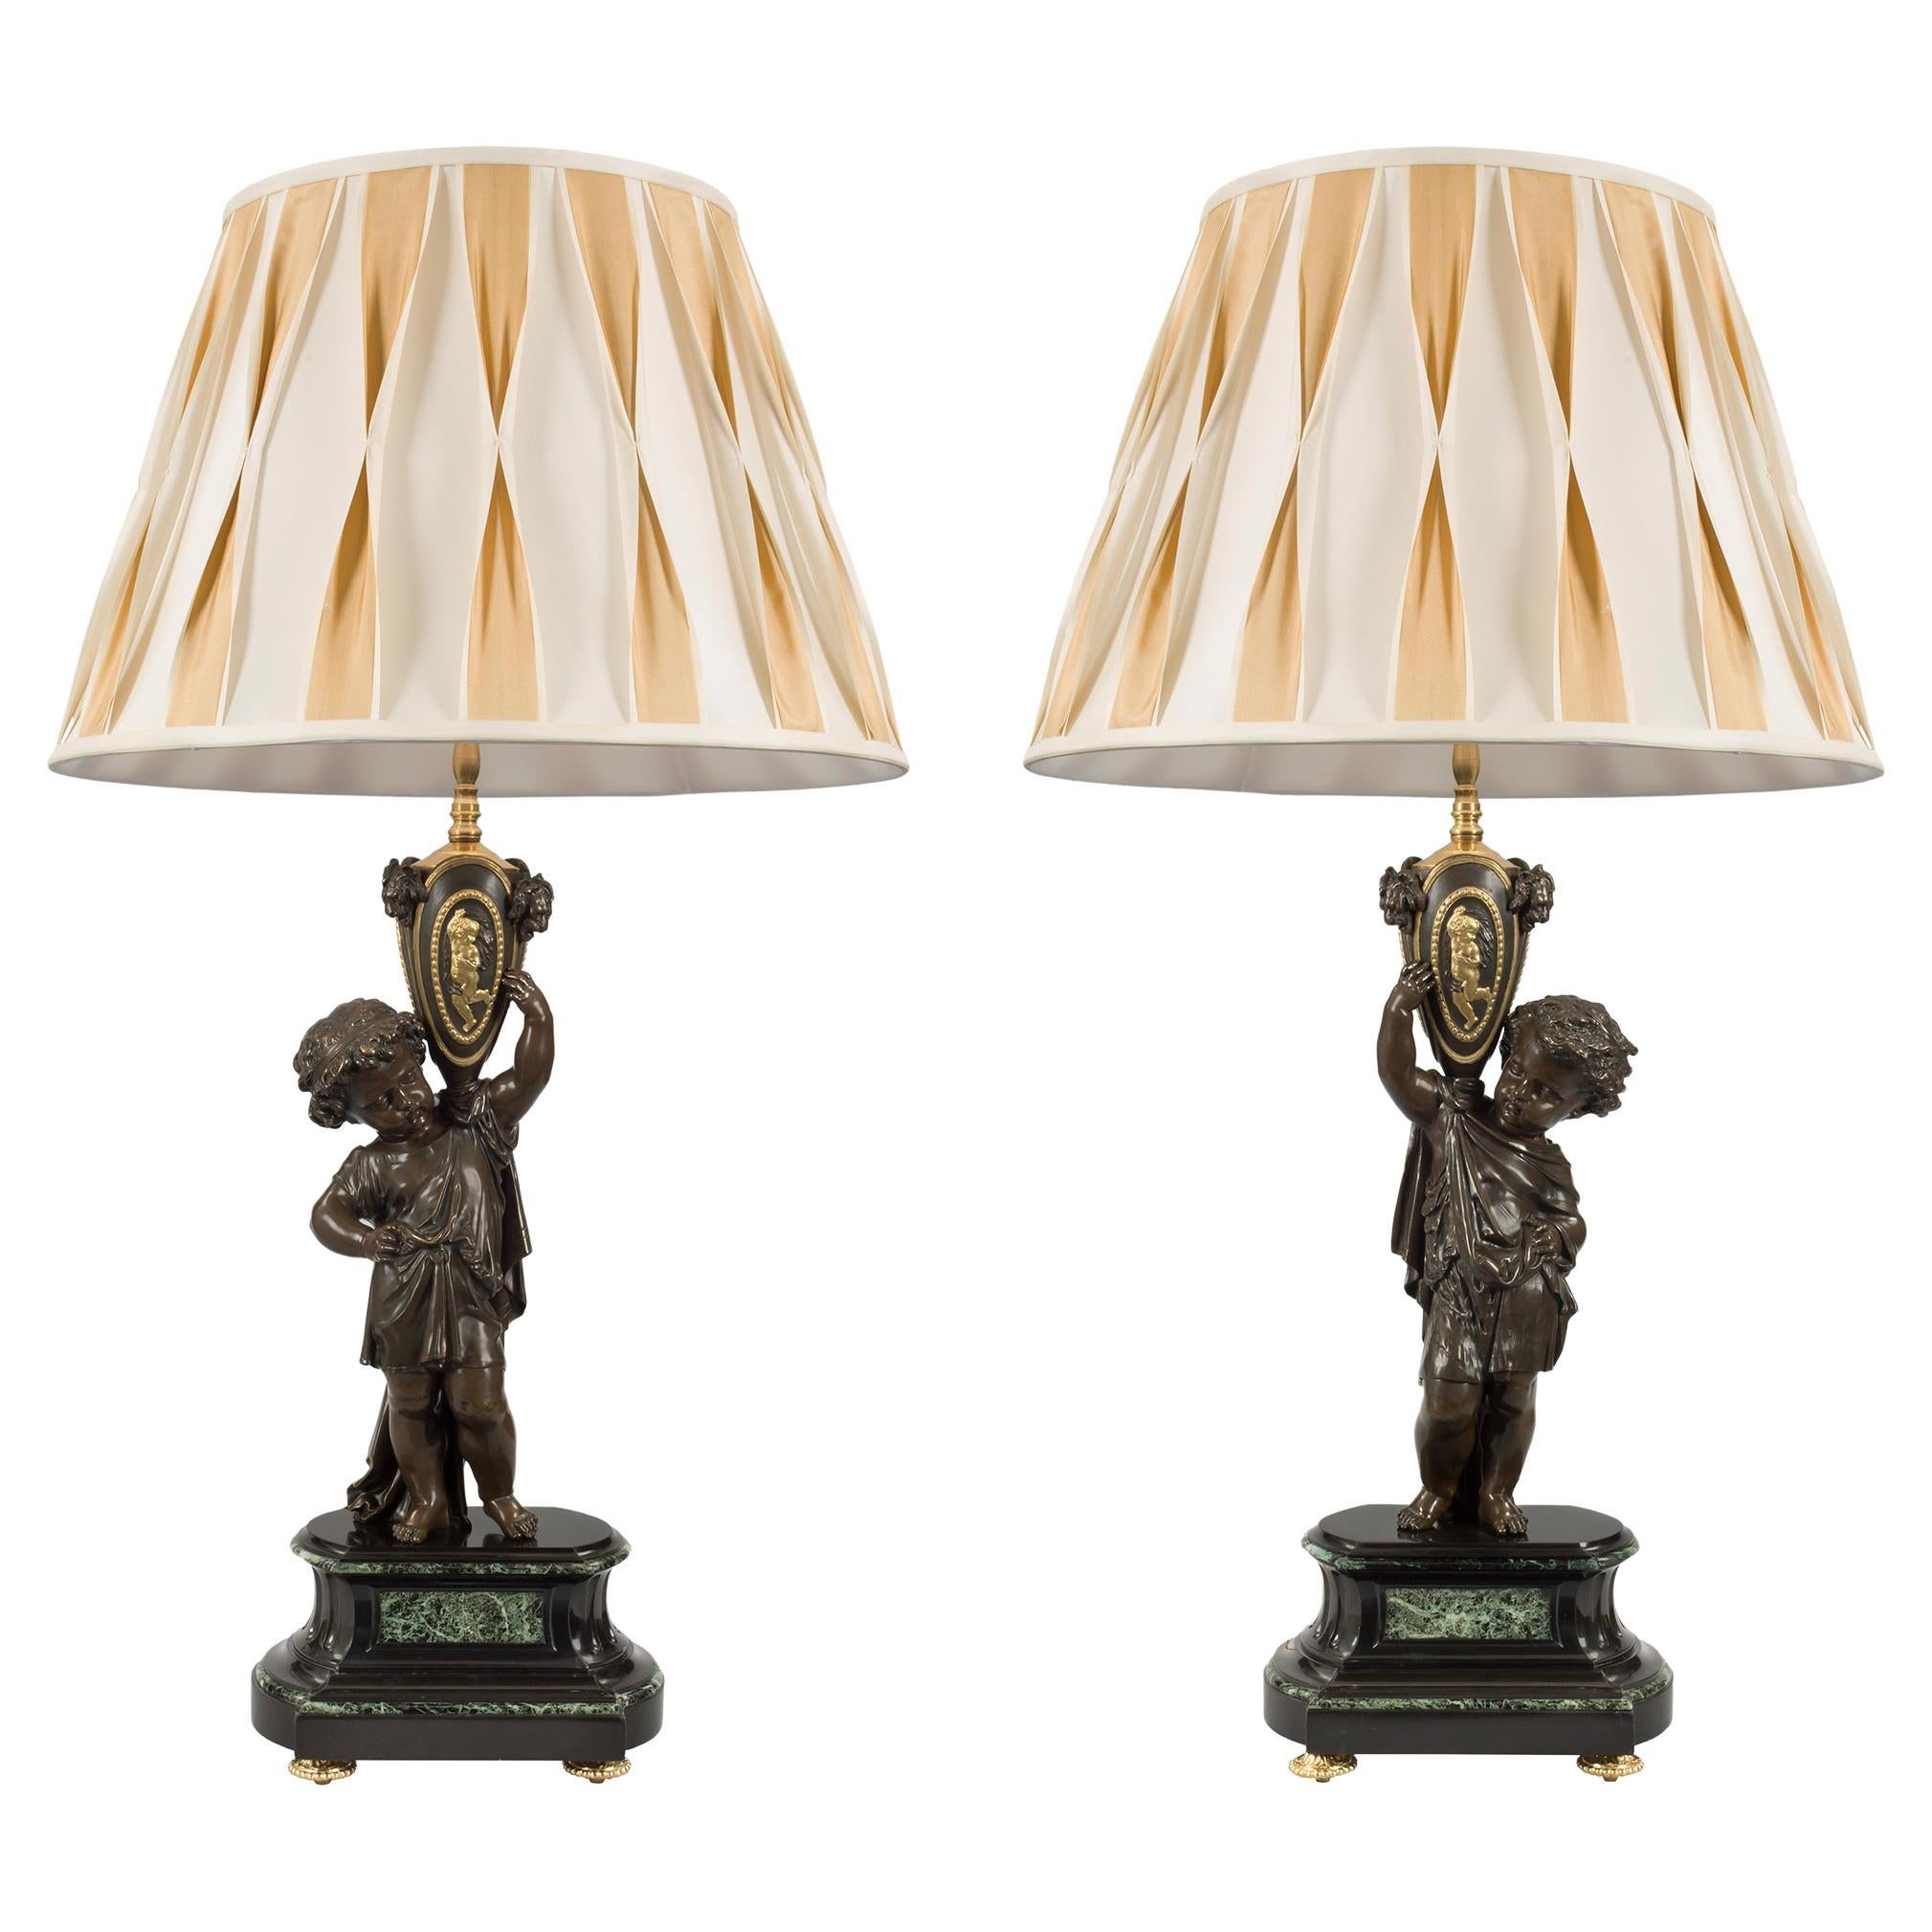 Paire de lampes françaises d'époque Louis XVI du 19ème siècle de style Belle Époque